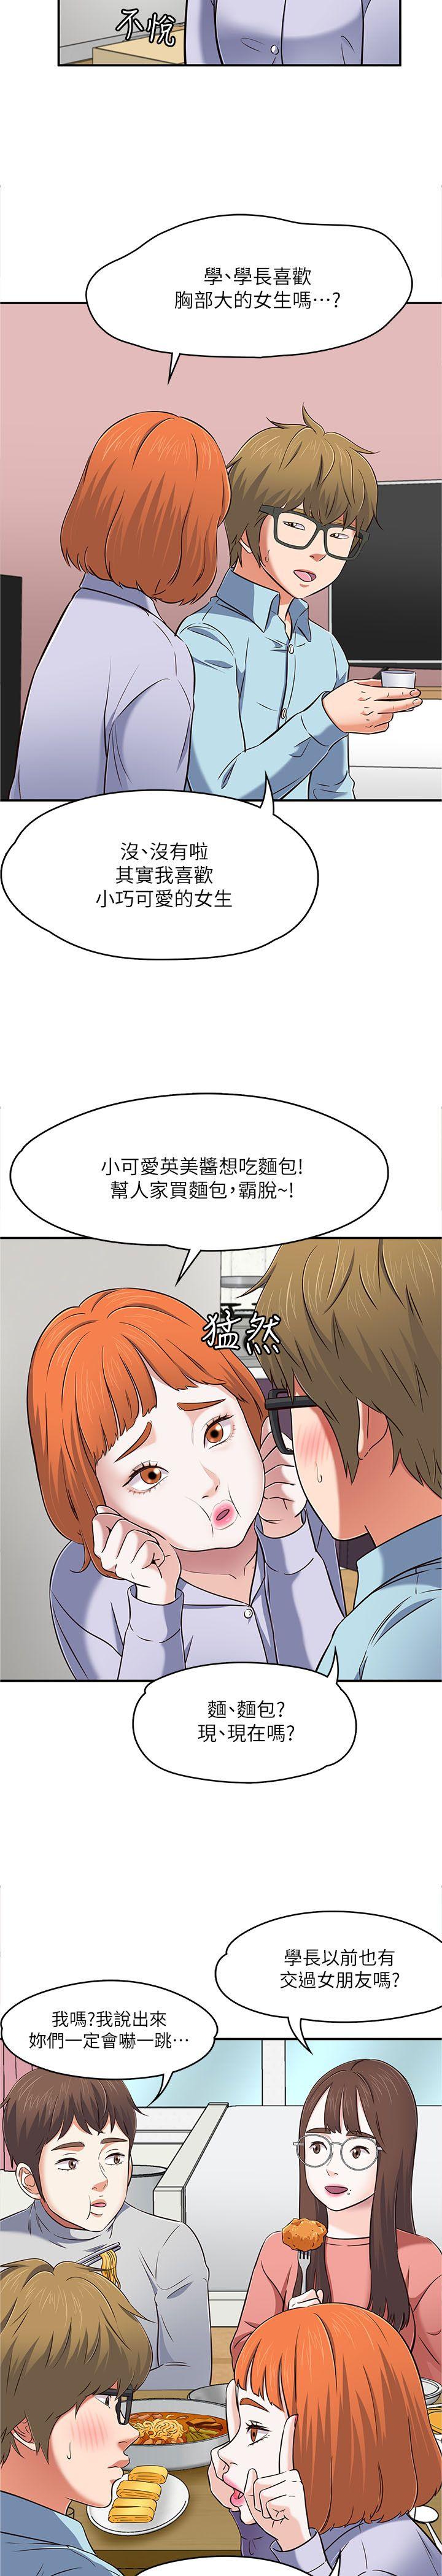 韩国污漫画 Roommate 第65话-暧昧乔迁宴 25